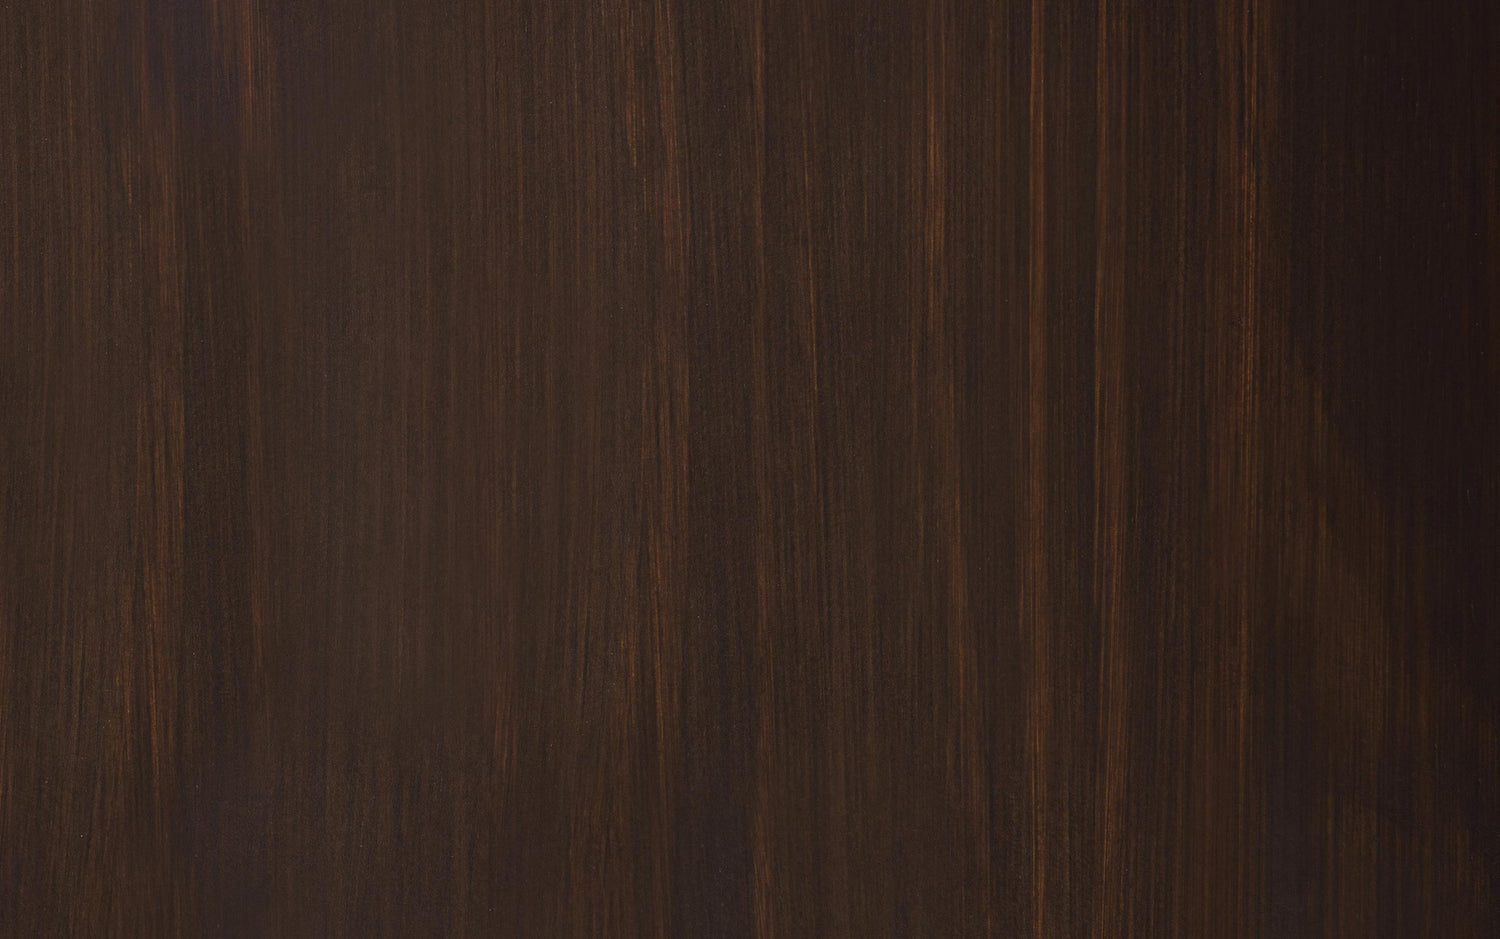 Dark Chestnut Brown | Connaught Entryway Storage Cabinet